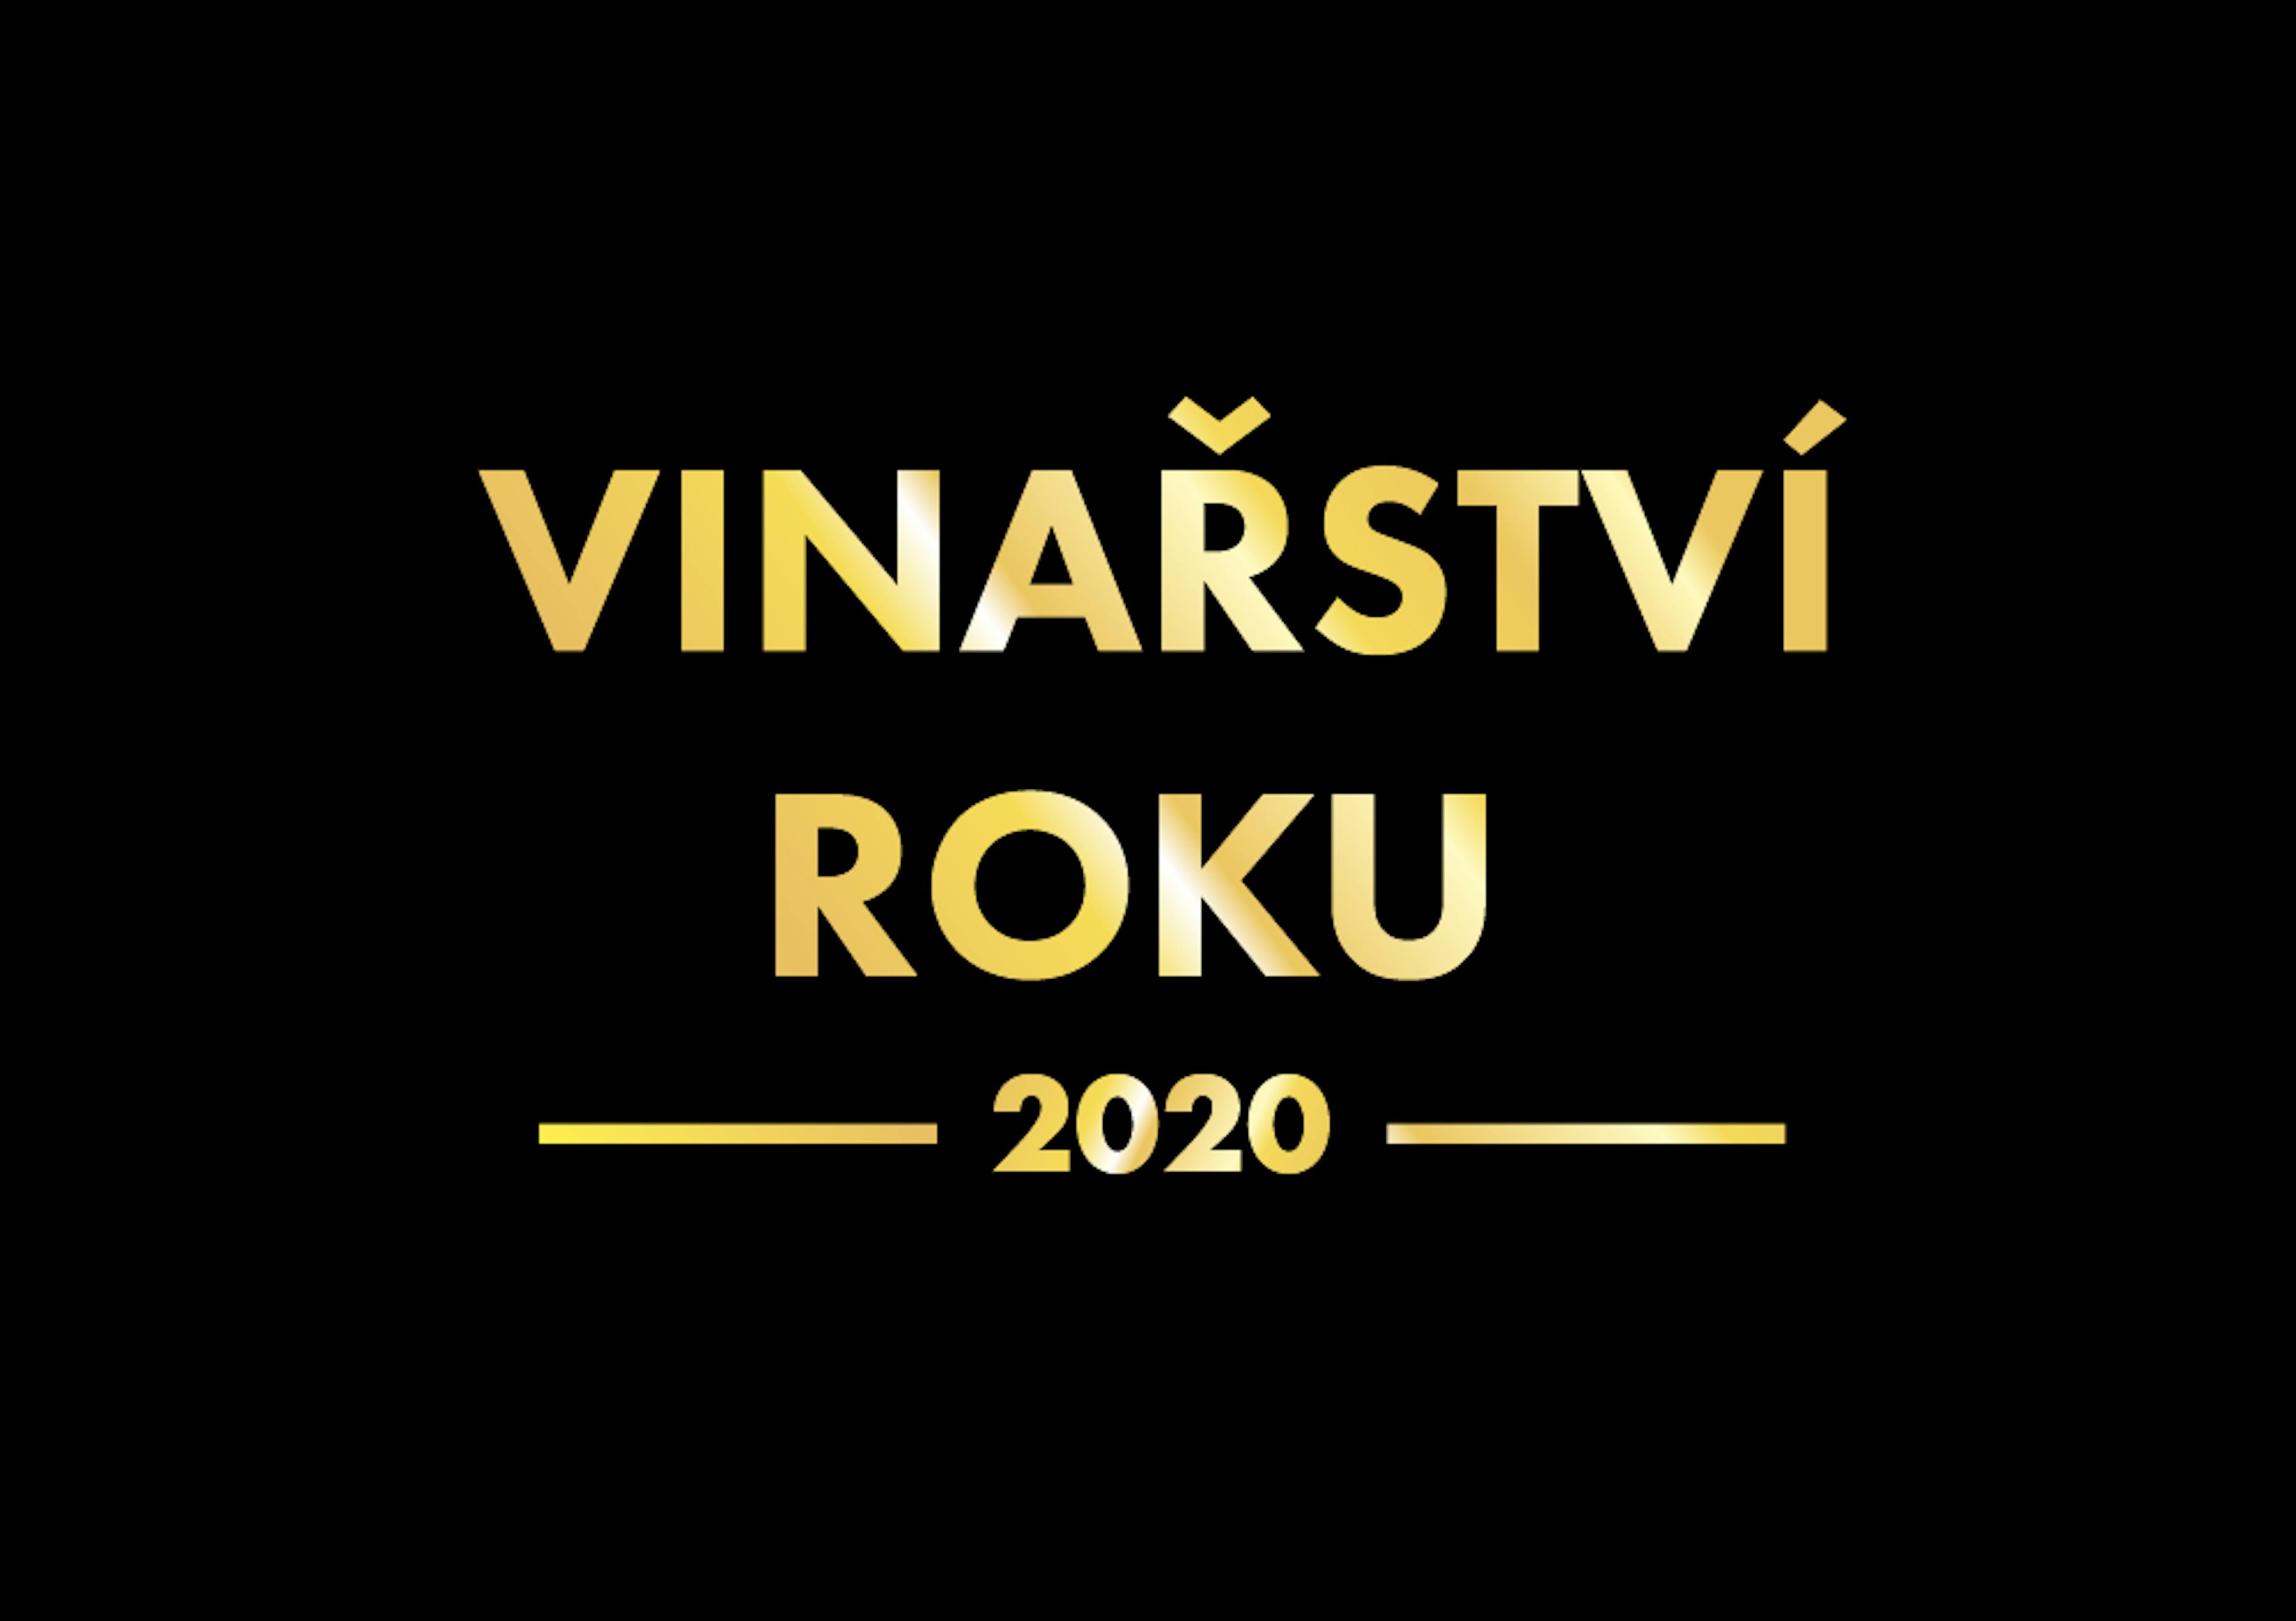 Vinařství roku 2020 logo